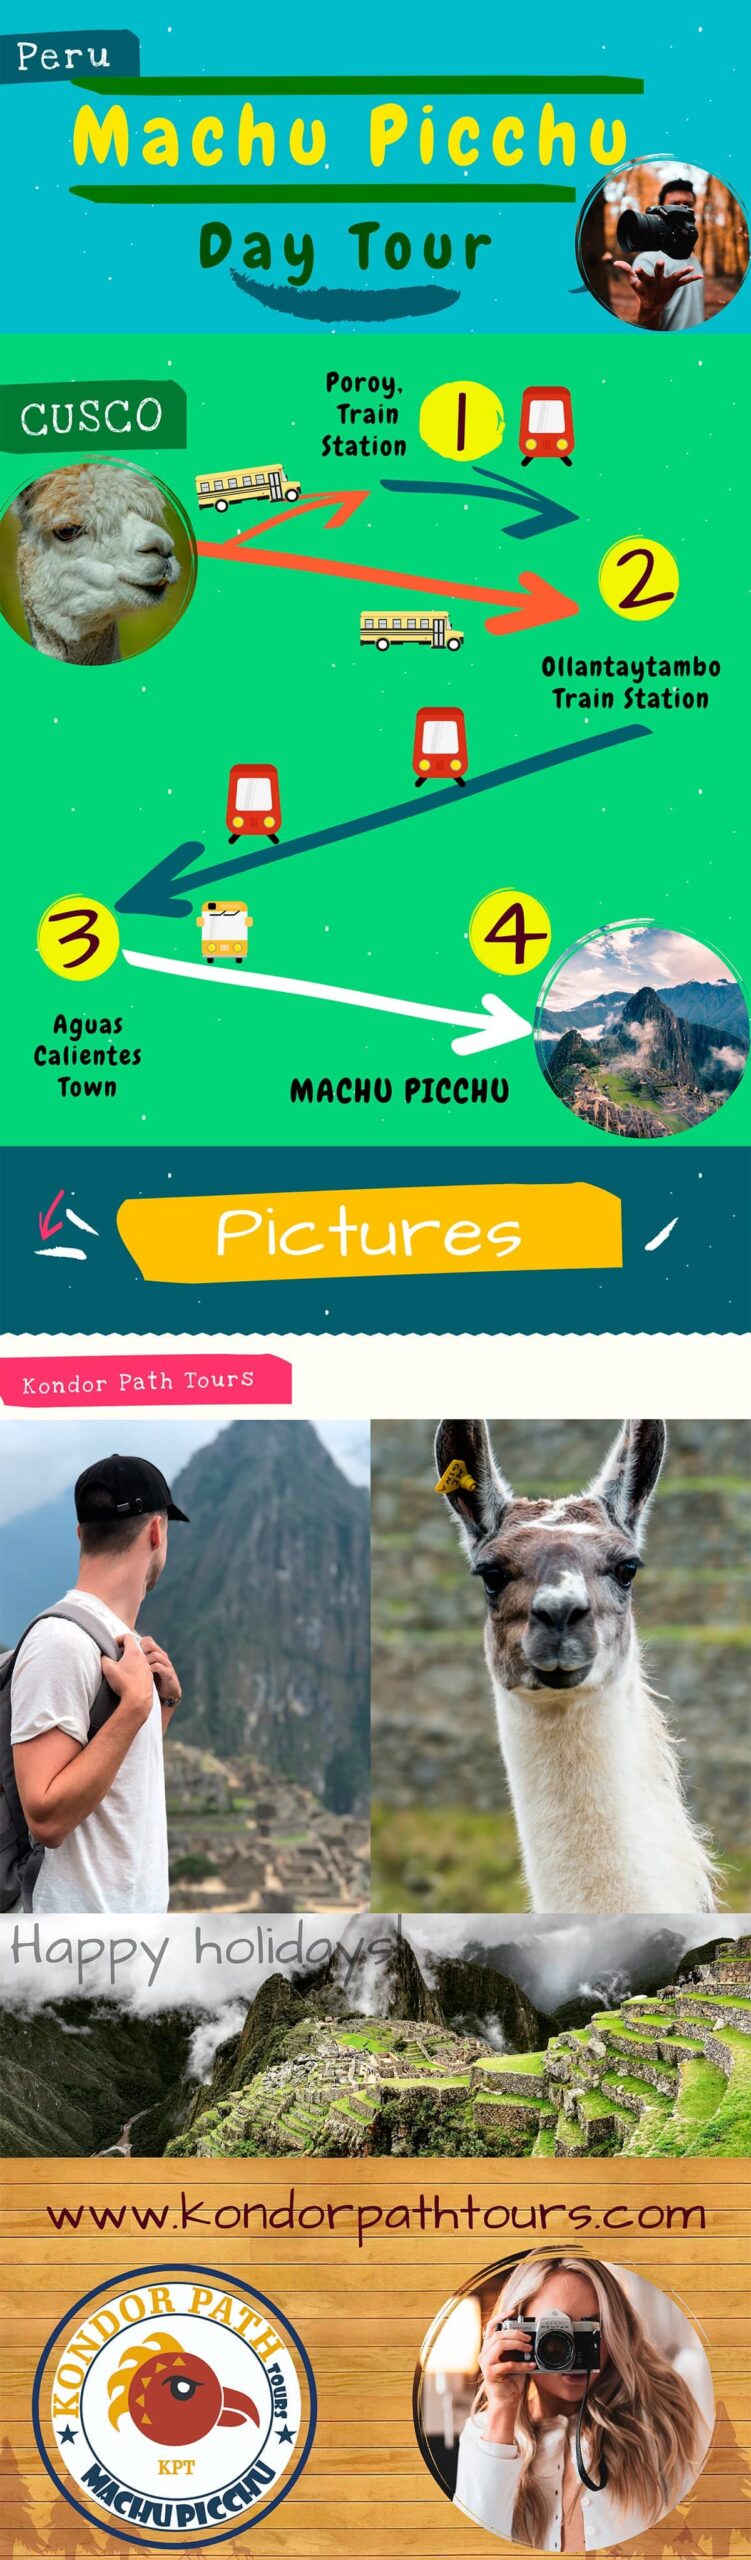 Full Day Machu Picchu Trip